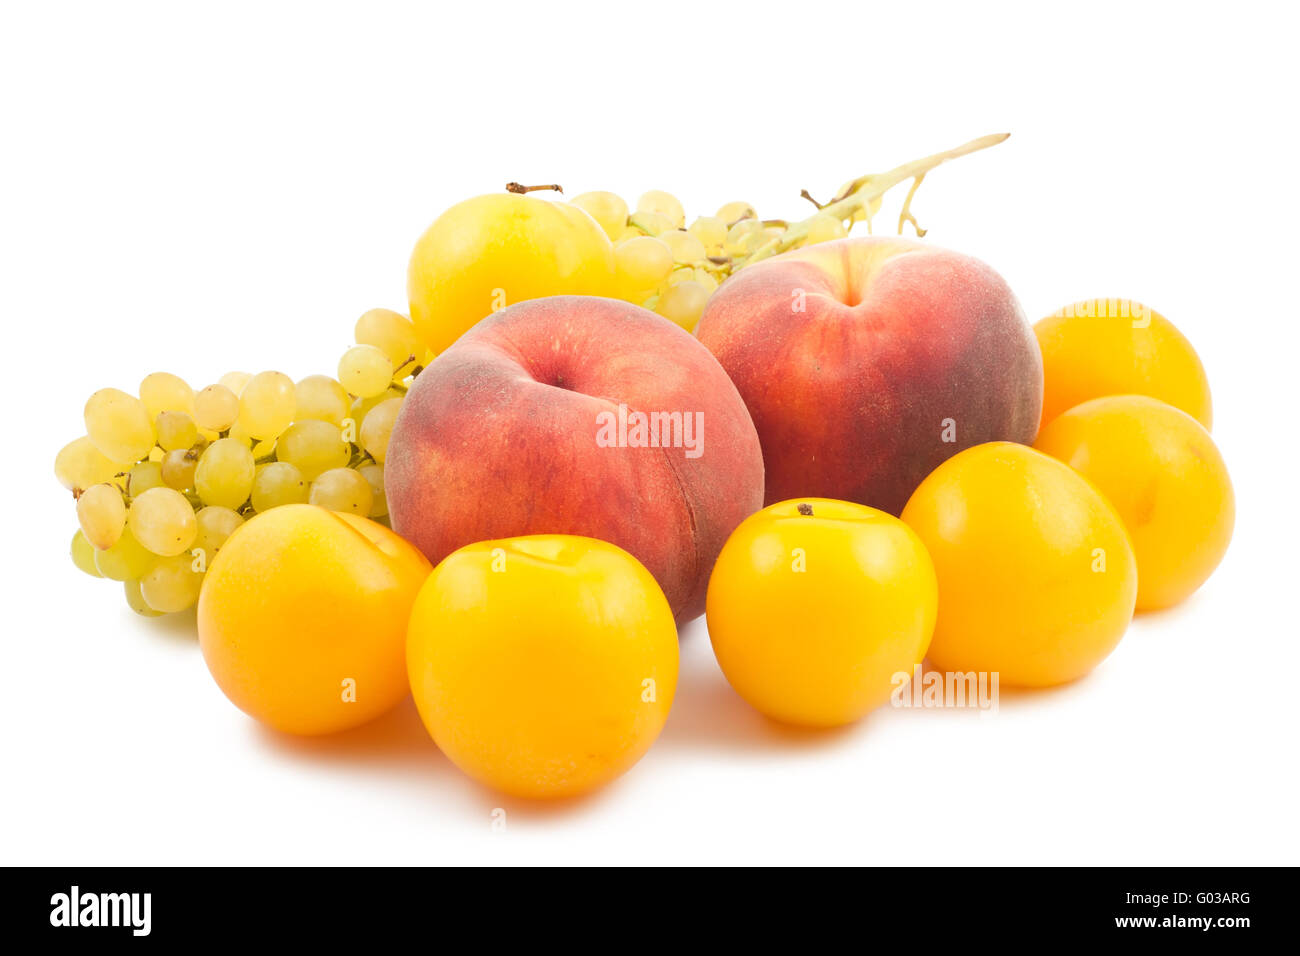 Due le pesche, susine giallo e uva ramo su whi Foto Stock